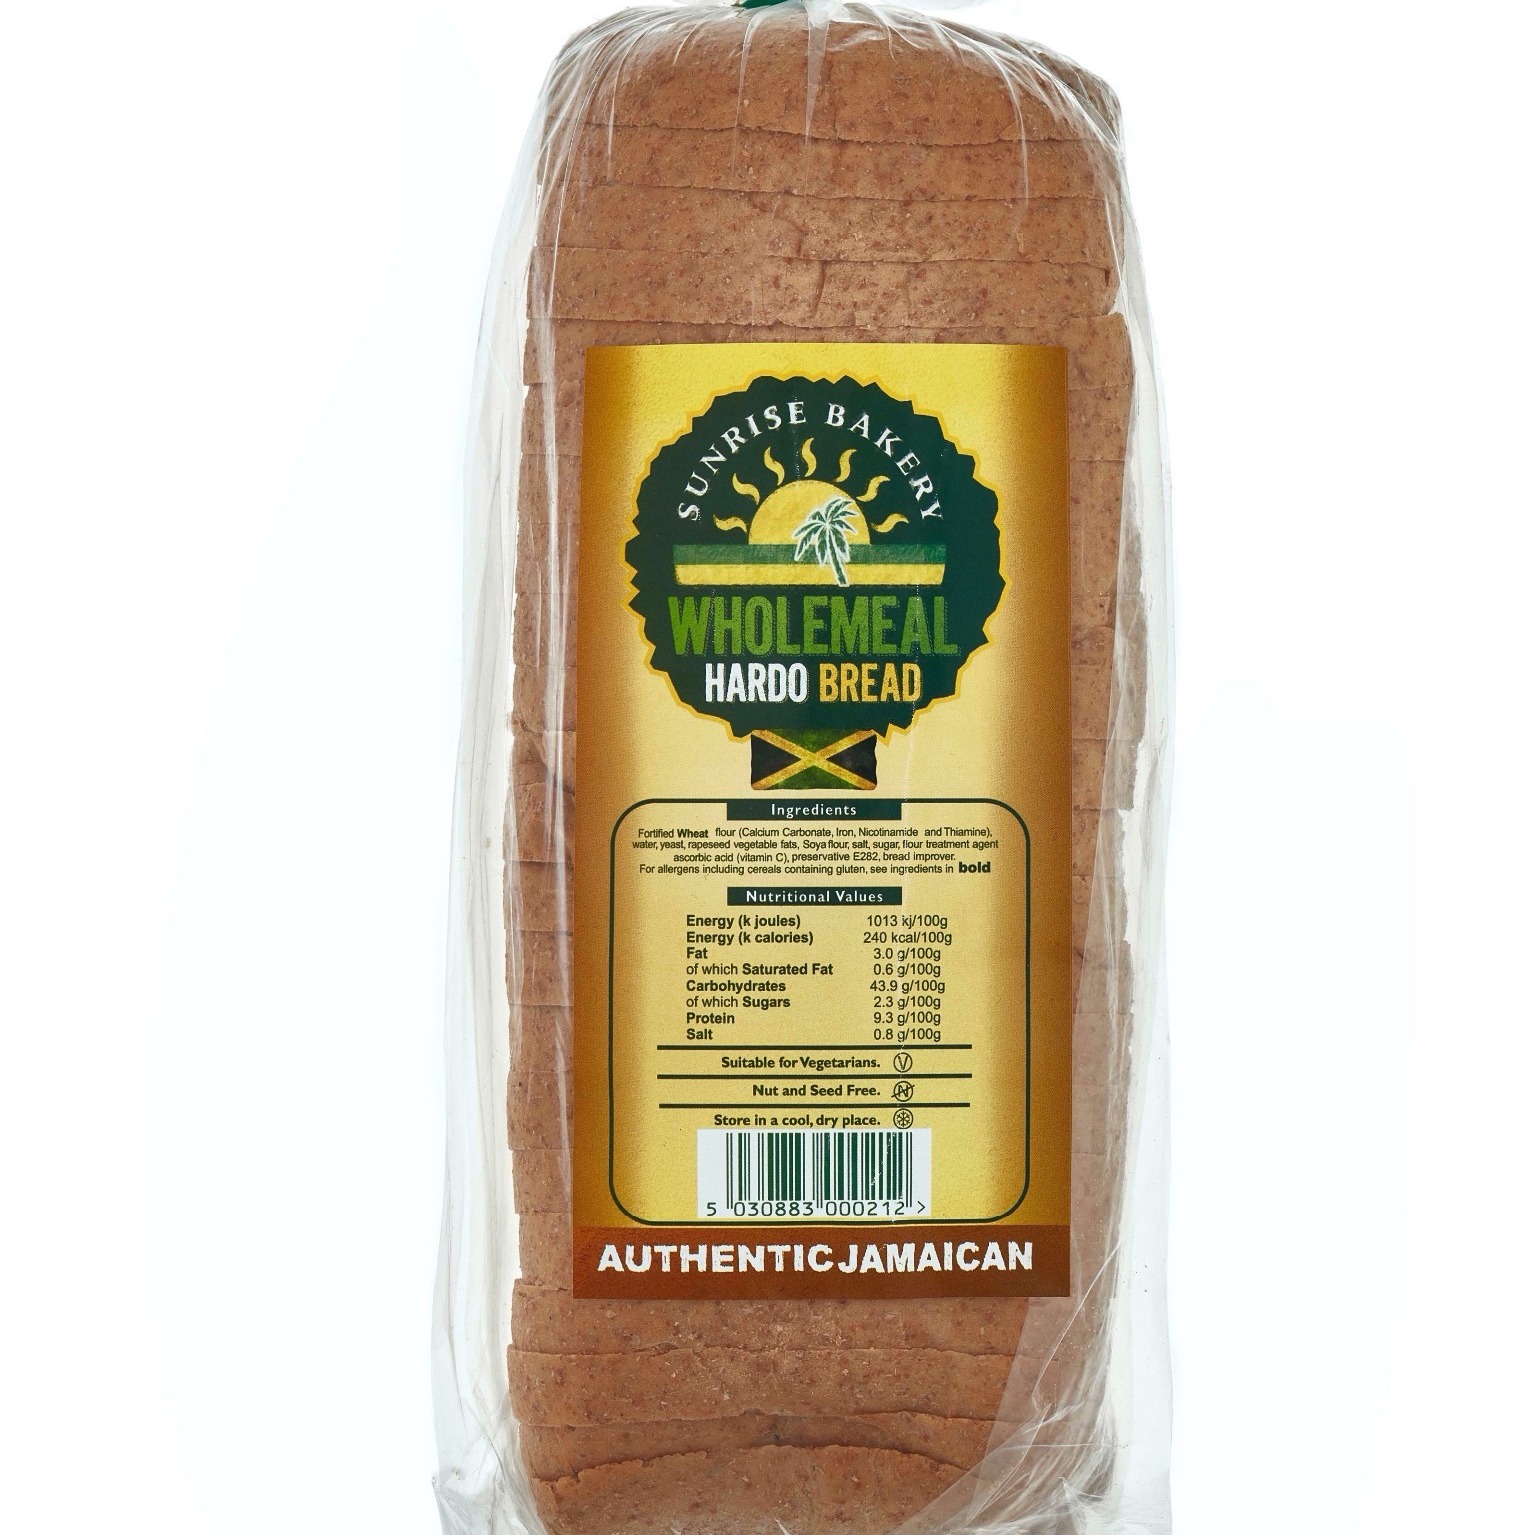 Wholemeal Hardo bread